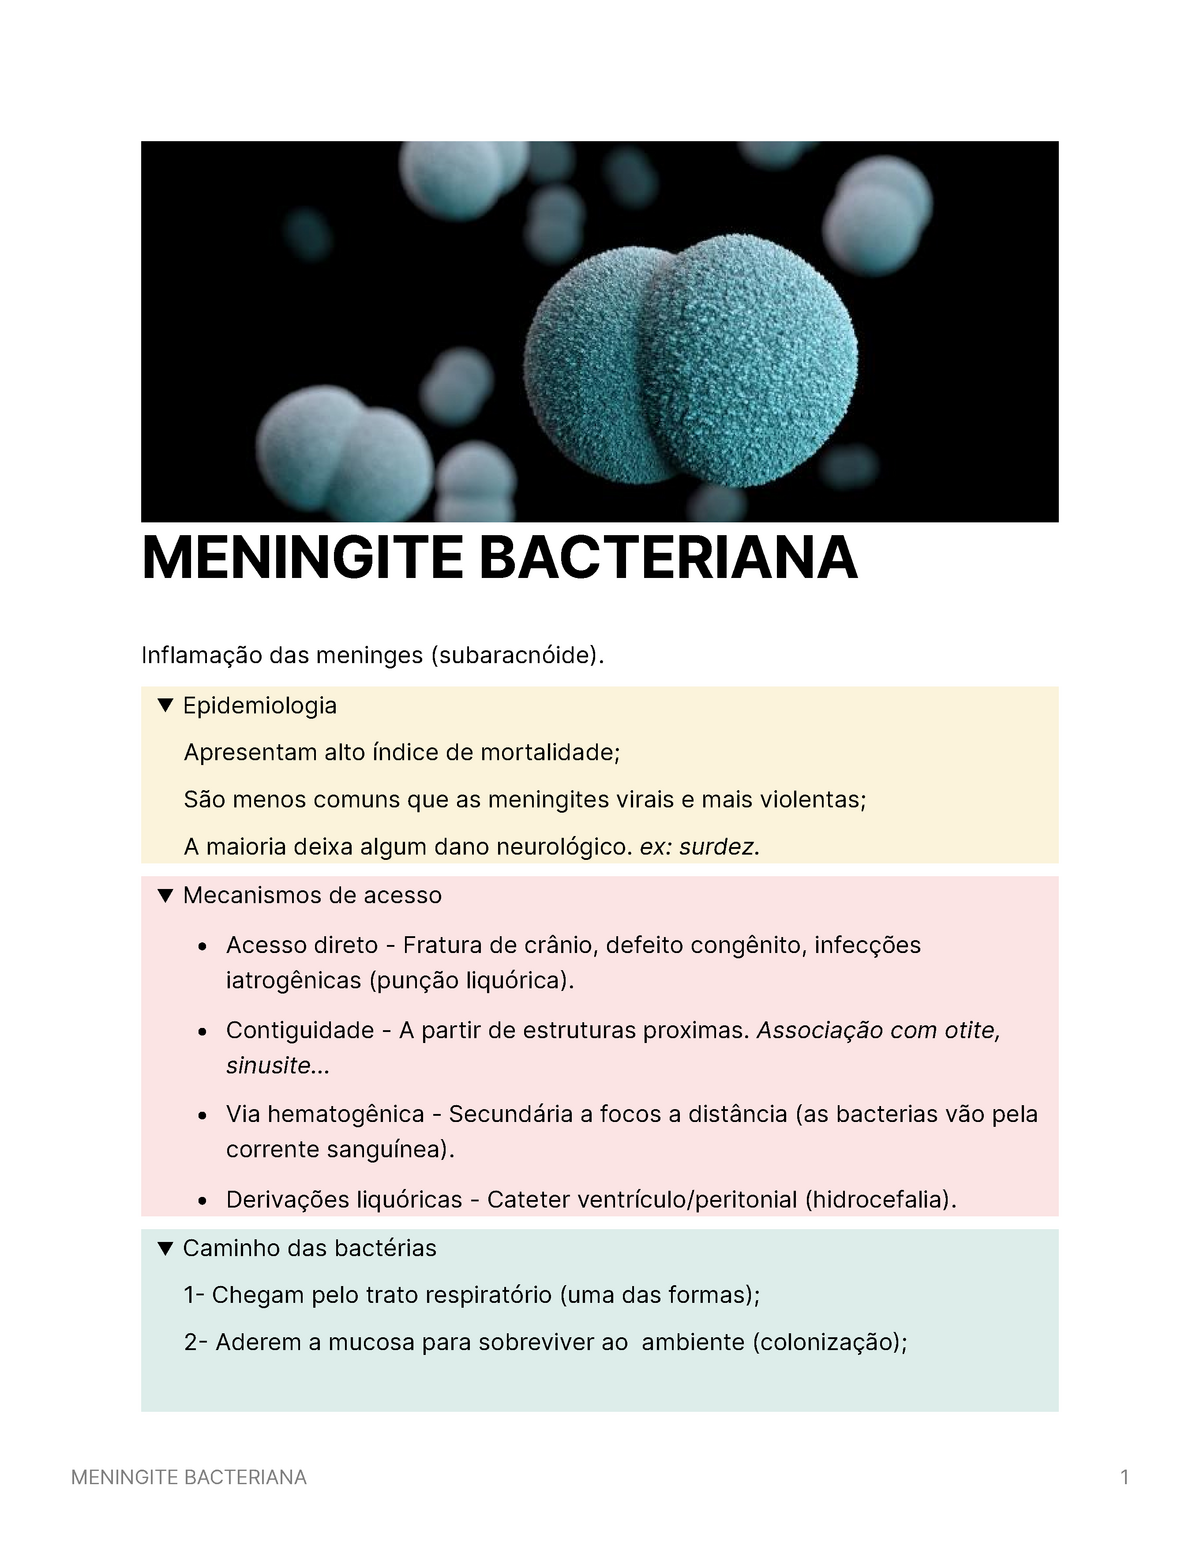 Meningite Bacteriana Meningite Bacteriana Inflamação Das Meninges Subaracnóide 9272